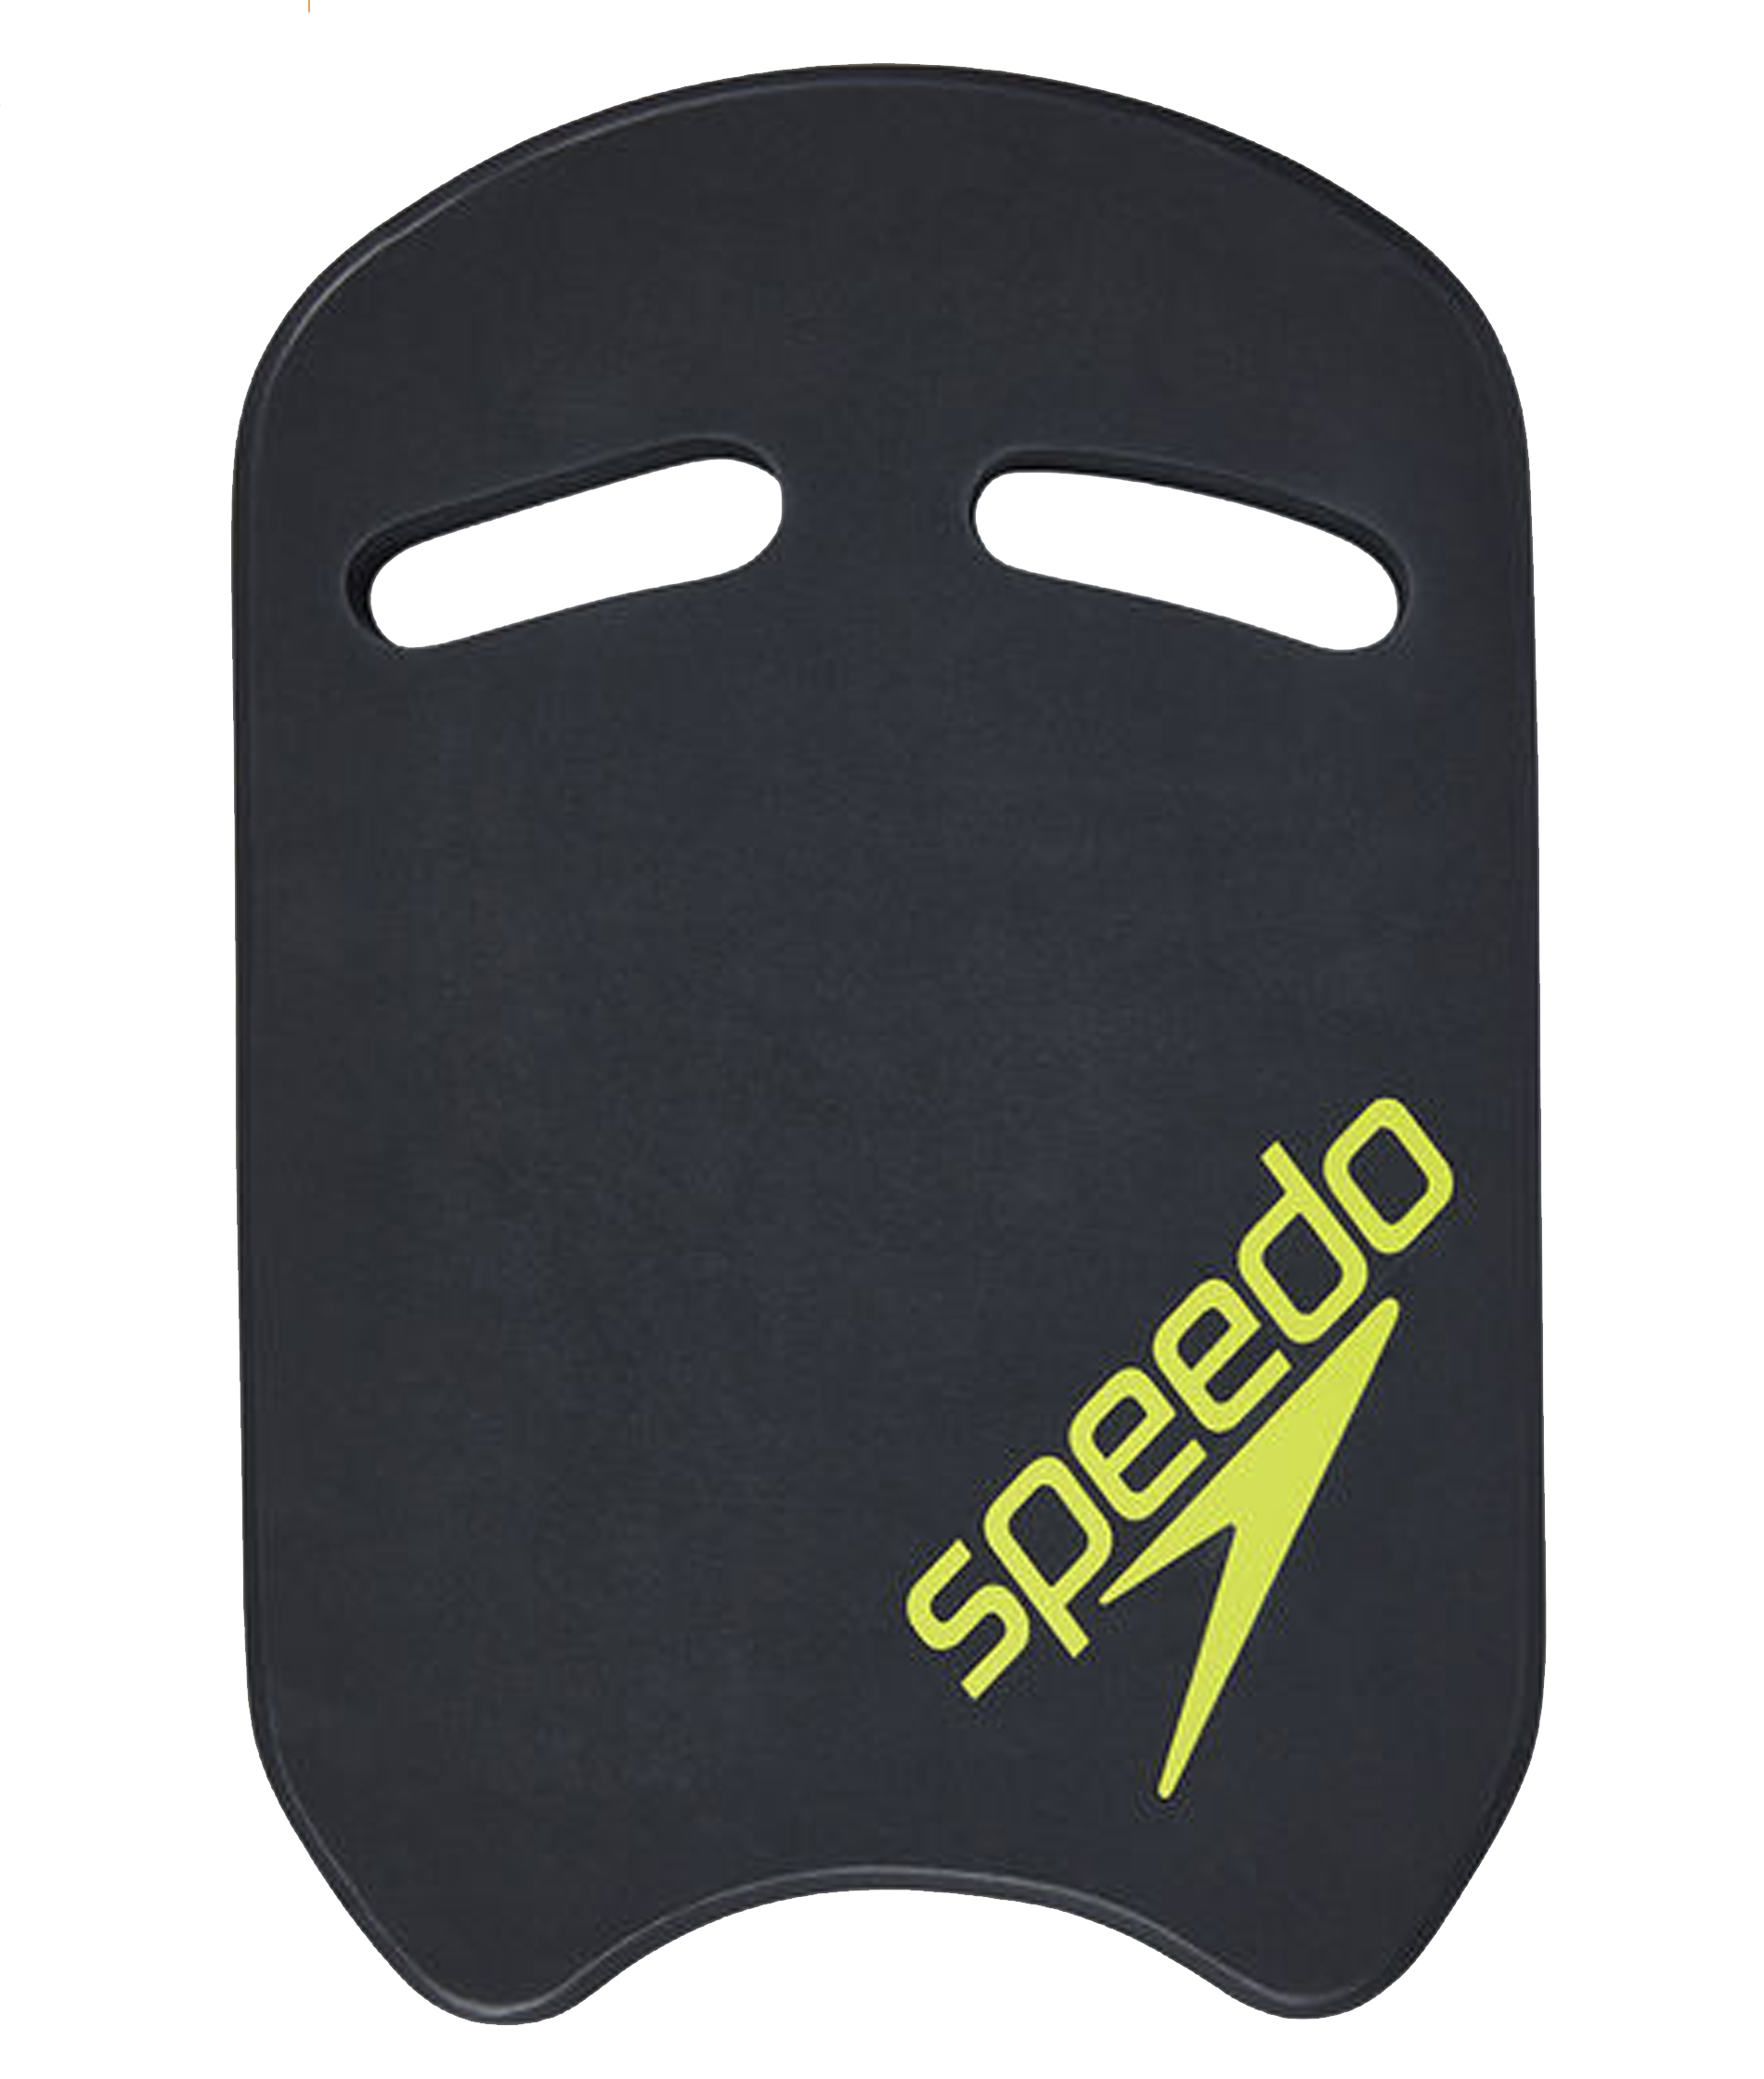 Speedo Kickboard - Grey/Green